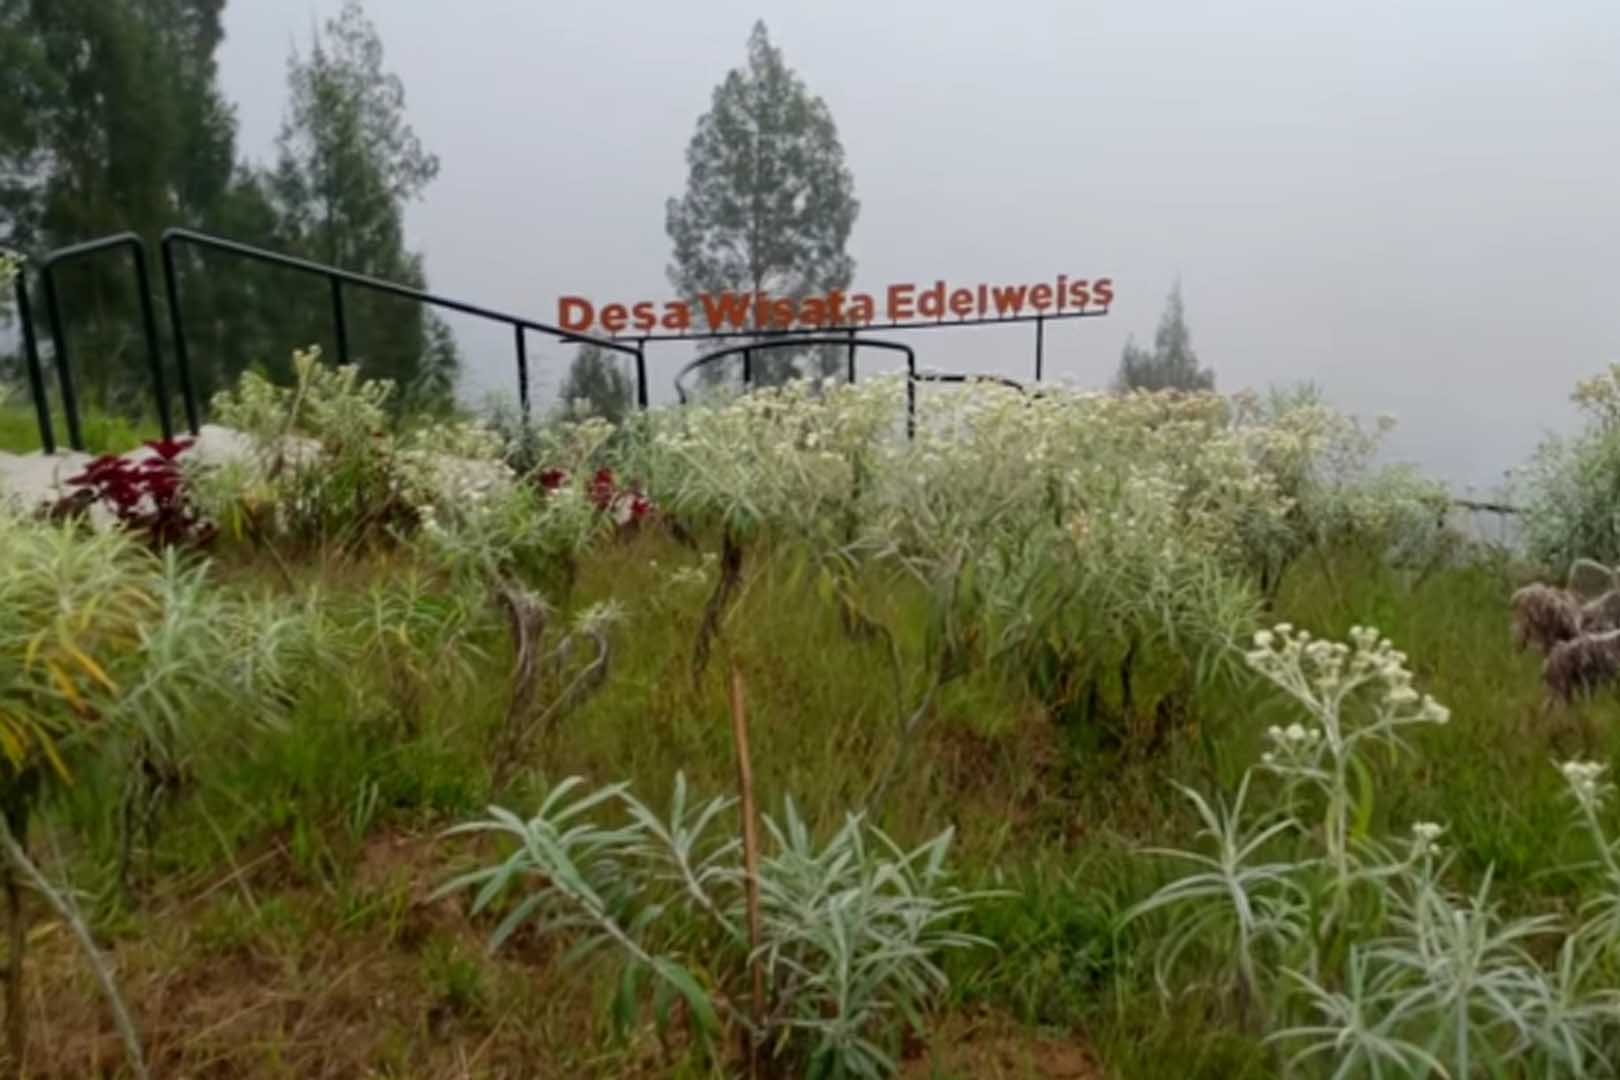 Taman Bunga Abadi Edelweis: Pusat Edukasi dan Konservasi di Gunung Bromo